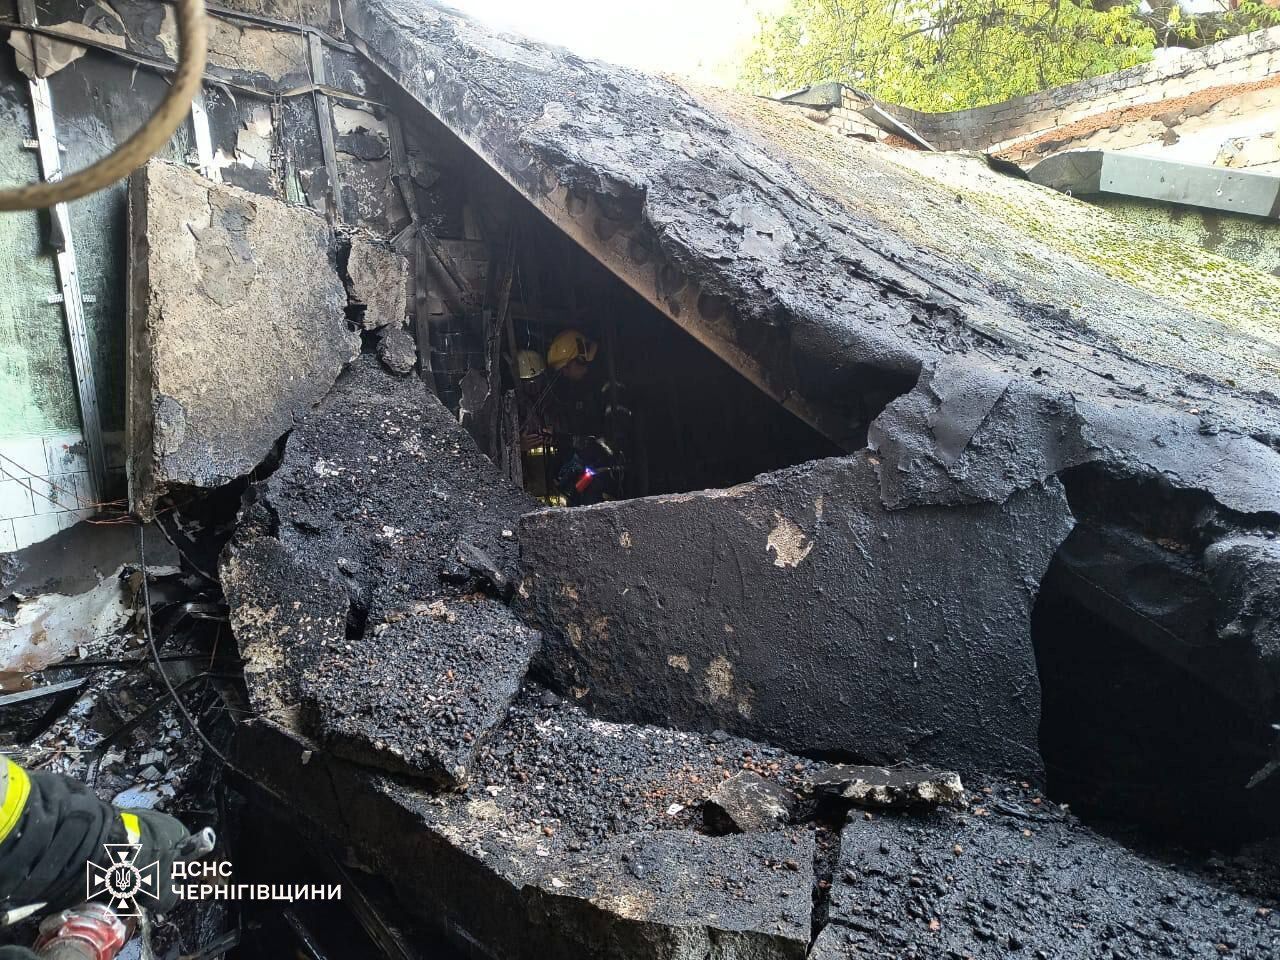 В Чернигове в помещении банка произошел взрыв, разгорелся пожар: на месте работали полиция и спасатели. Фото